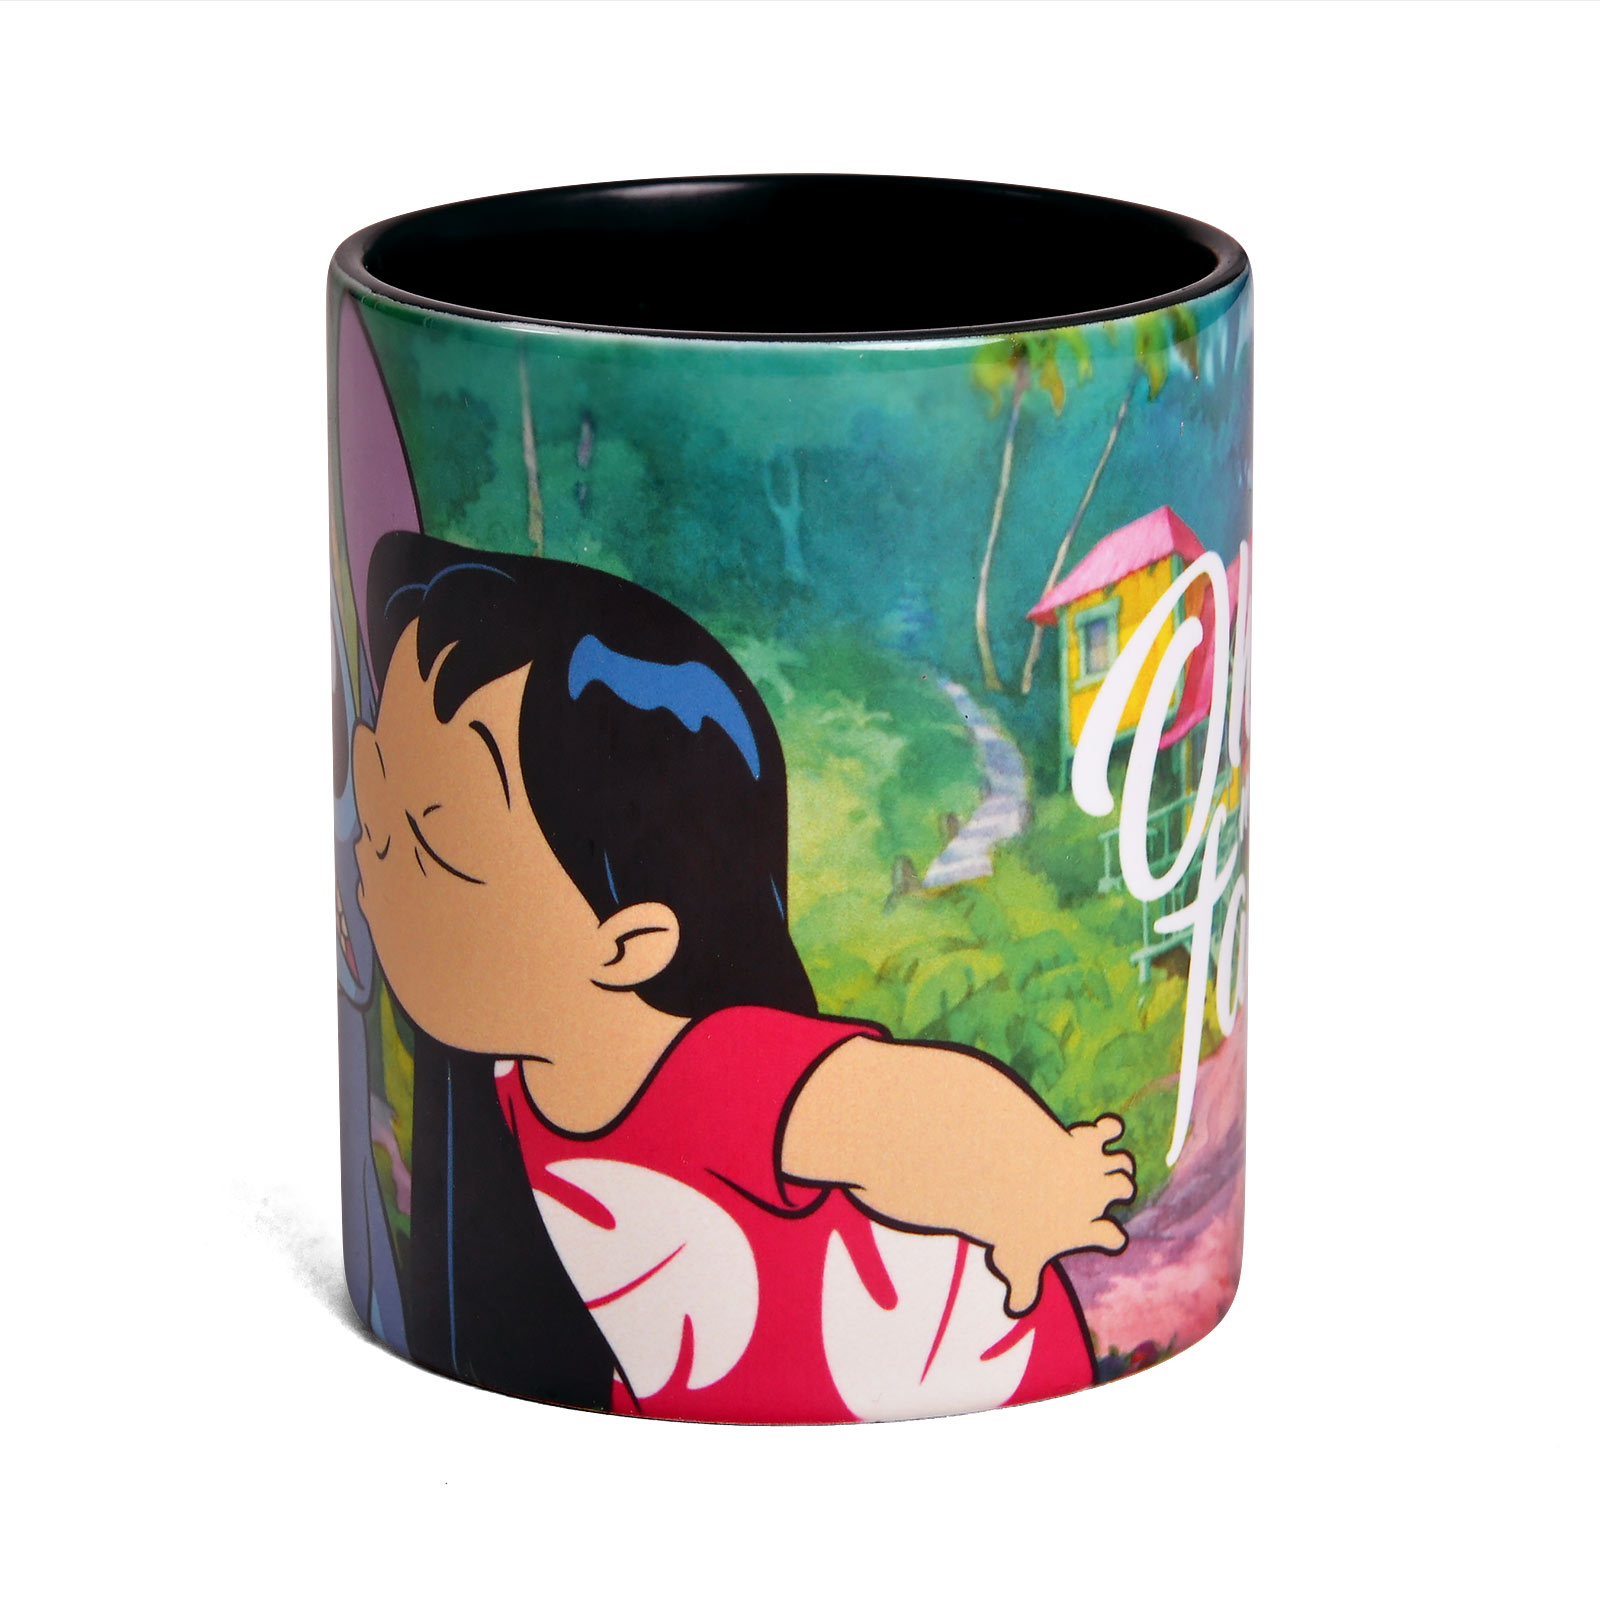 Lilo & Stitch - Ohana Means Family Mug